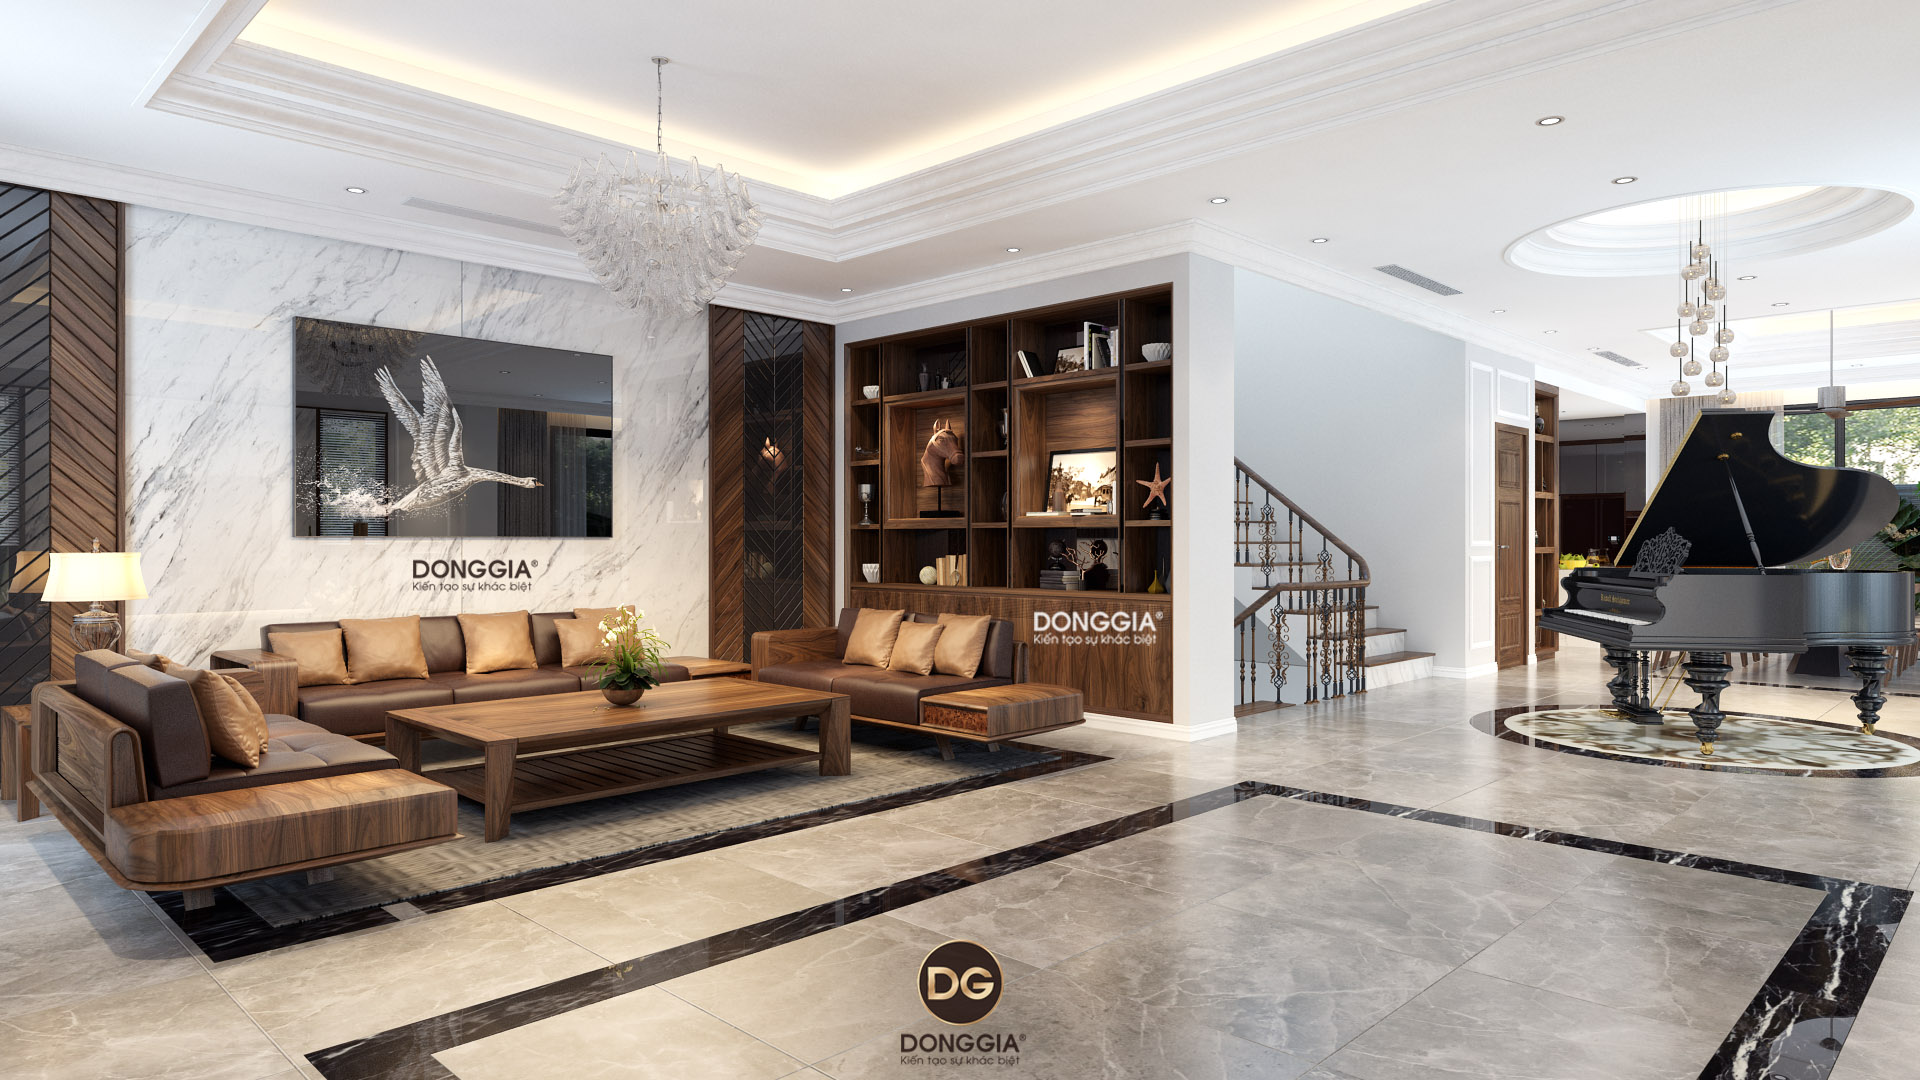 Thiết kế nội thất phòng khách liên thông bếp ăn đẹp 2021: Với thiết kế nội thất đẹp lung linh, phòng khách liên thông bếp 2021 như một kiệt tác nghệ thuật. Các chi tiết tinh tế và màu sắc đậm chất cá tính tạo nên không gian sống động và ấm cúng. Nhấn vào ảnh để khám phá sự đẹp mắt của thiết kế nội thất phòng khách liền bếp 2021 này.